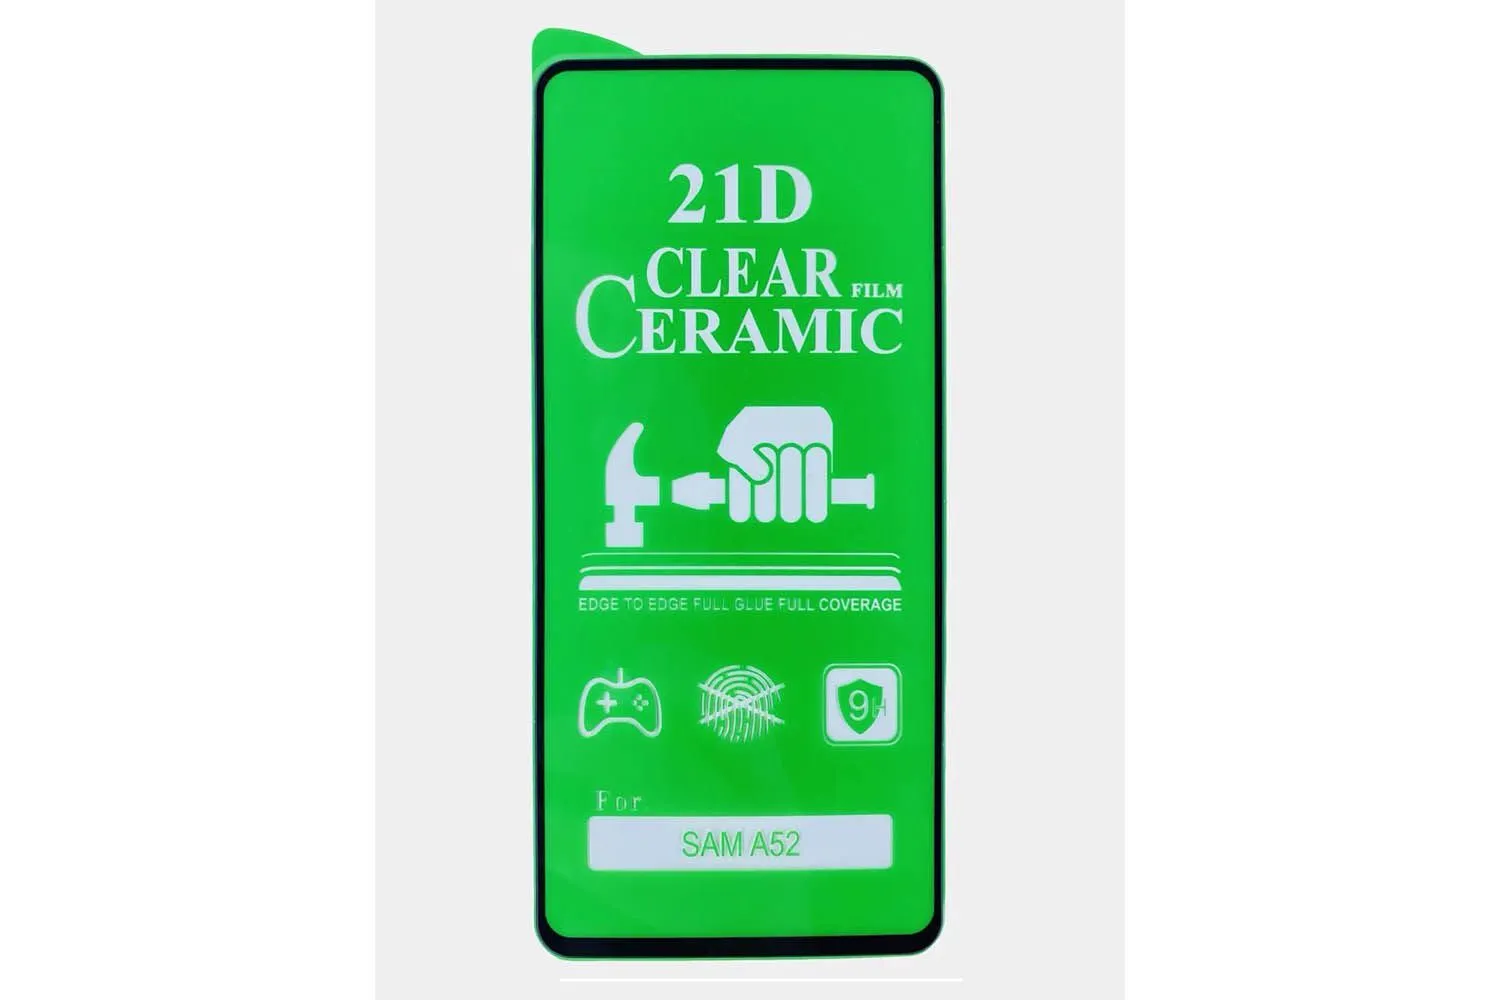 Противоударное стекло/пленка керамическое Ceramic для дисплея Samsung Galaxy A51, A52, M31s, S20 FE